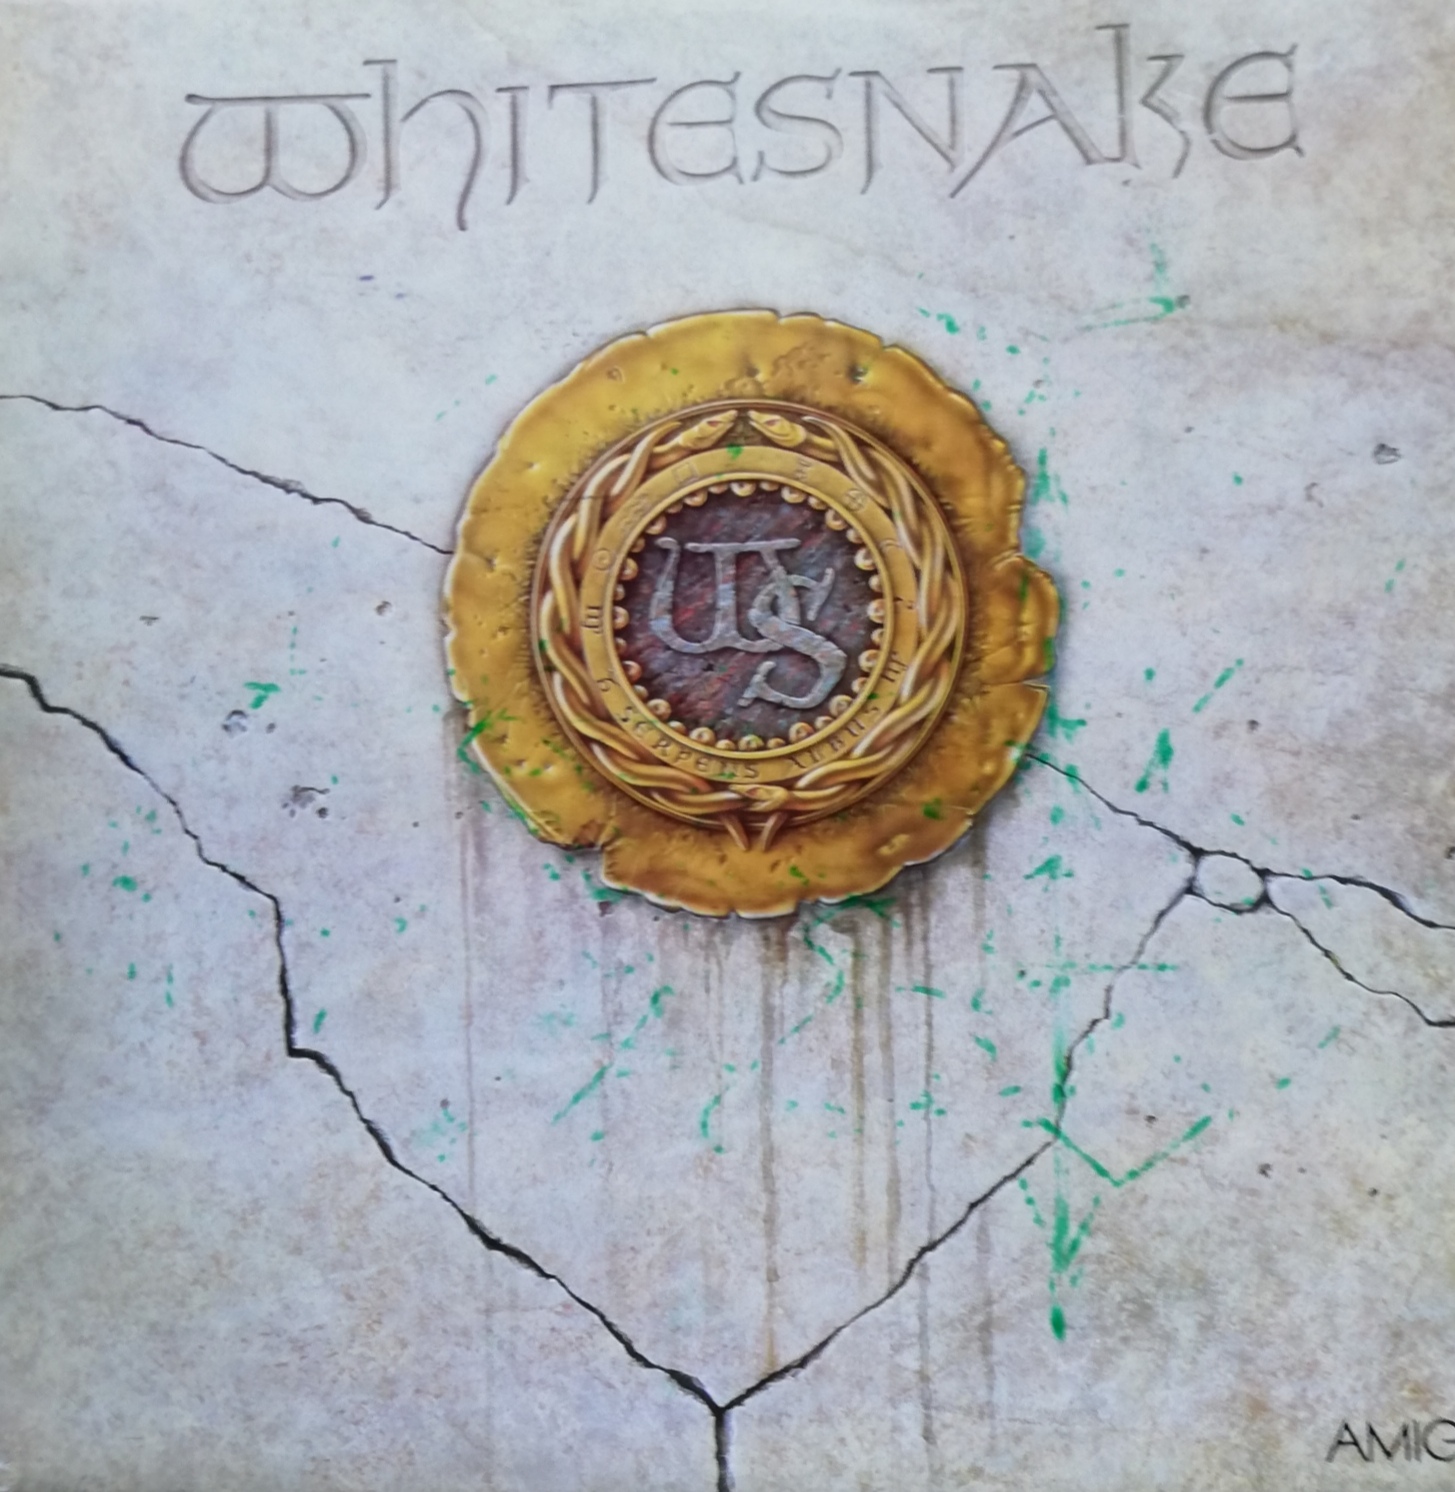 Whitesnake – Whitesnake PL